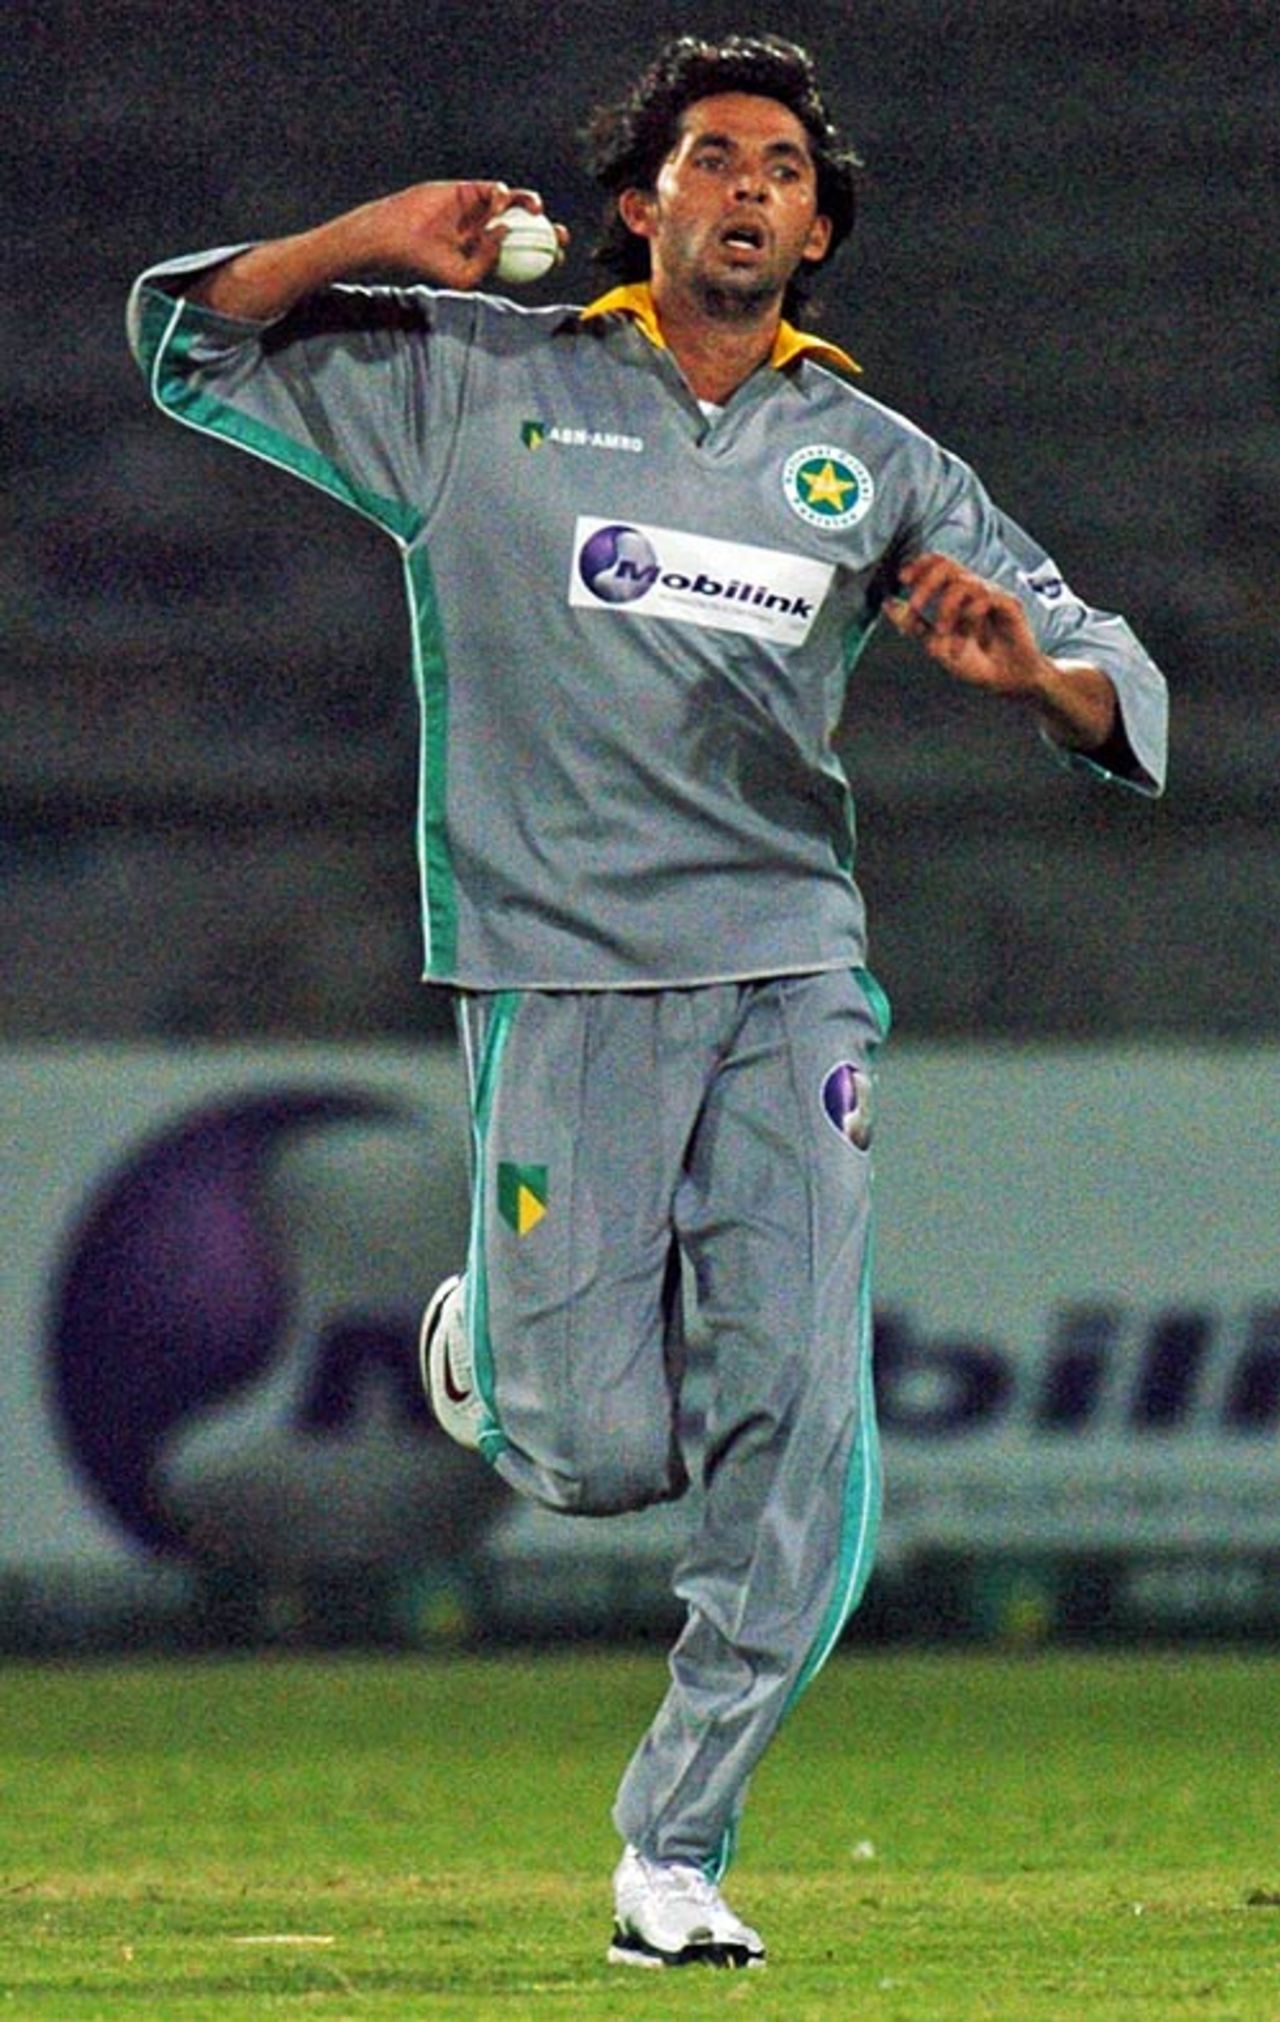 Mohammad Asif bowls for the Sialkot Stallions, Sialkot Stallions v Karachi Zebras, Twenty20 Cup, 2nd round, December 22, 2006